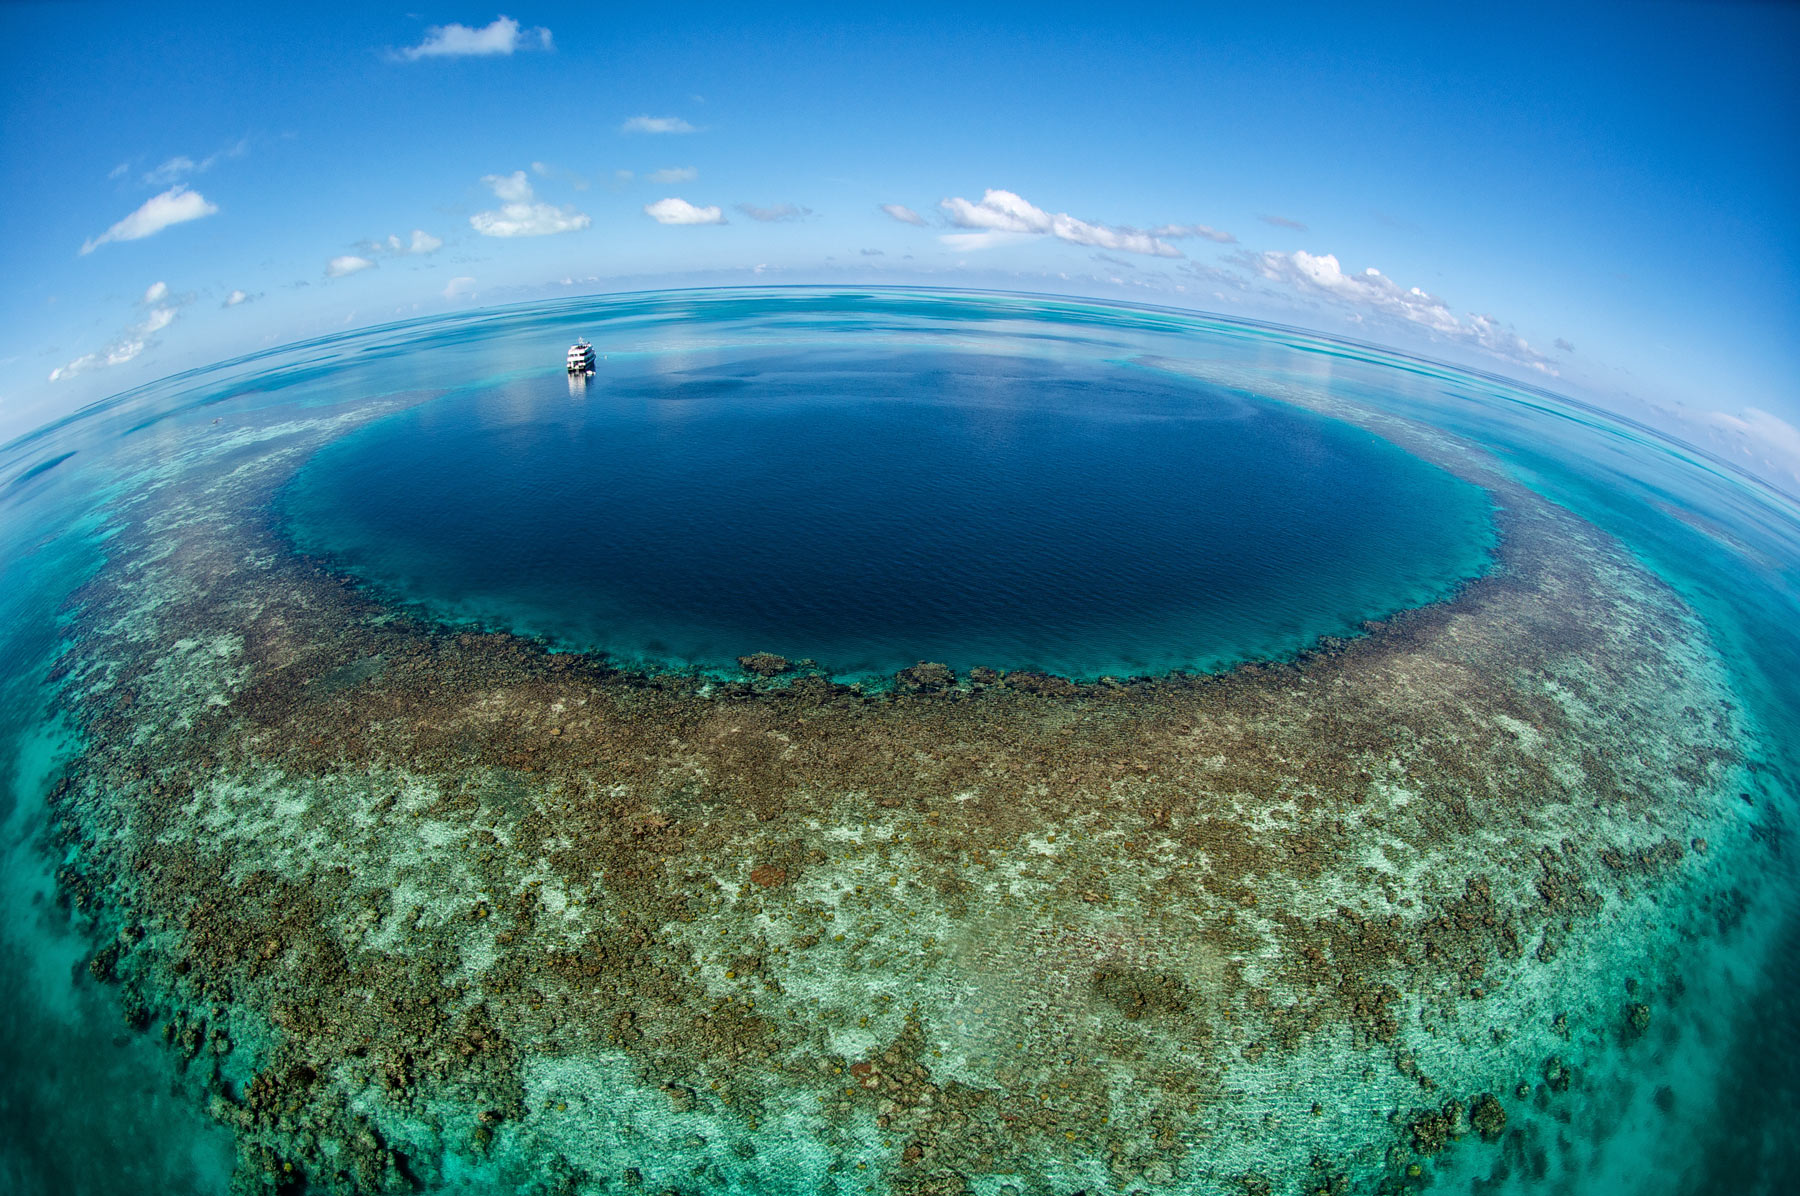 Сами больше море в мире. Большая голубая дыра Юкатан. Большая голубая дыра, Лайтхаус-риф. Голубая впадина Белиз. Большая голубая дыра Белиз Центральная Америка.